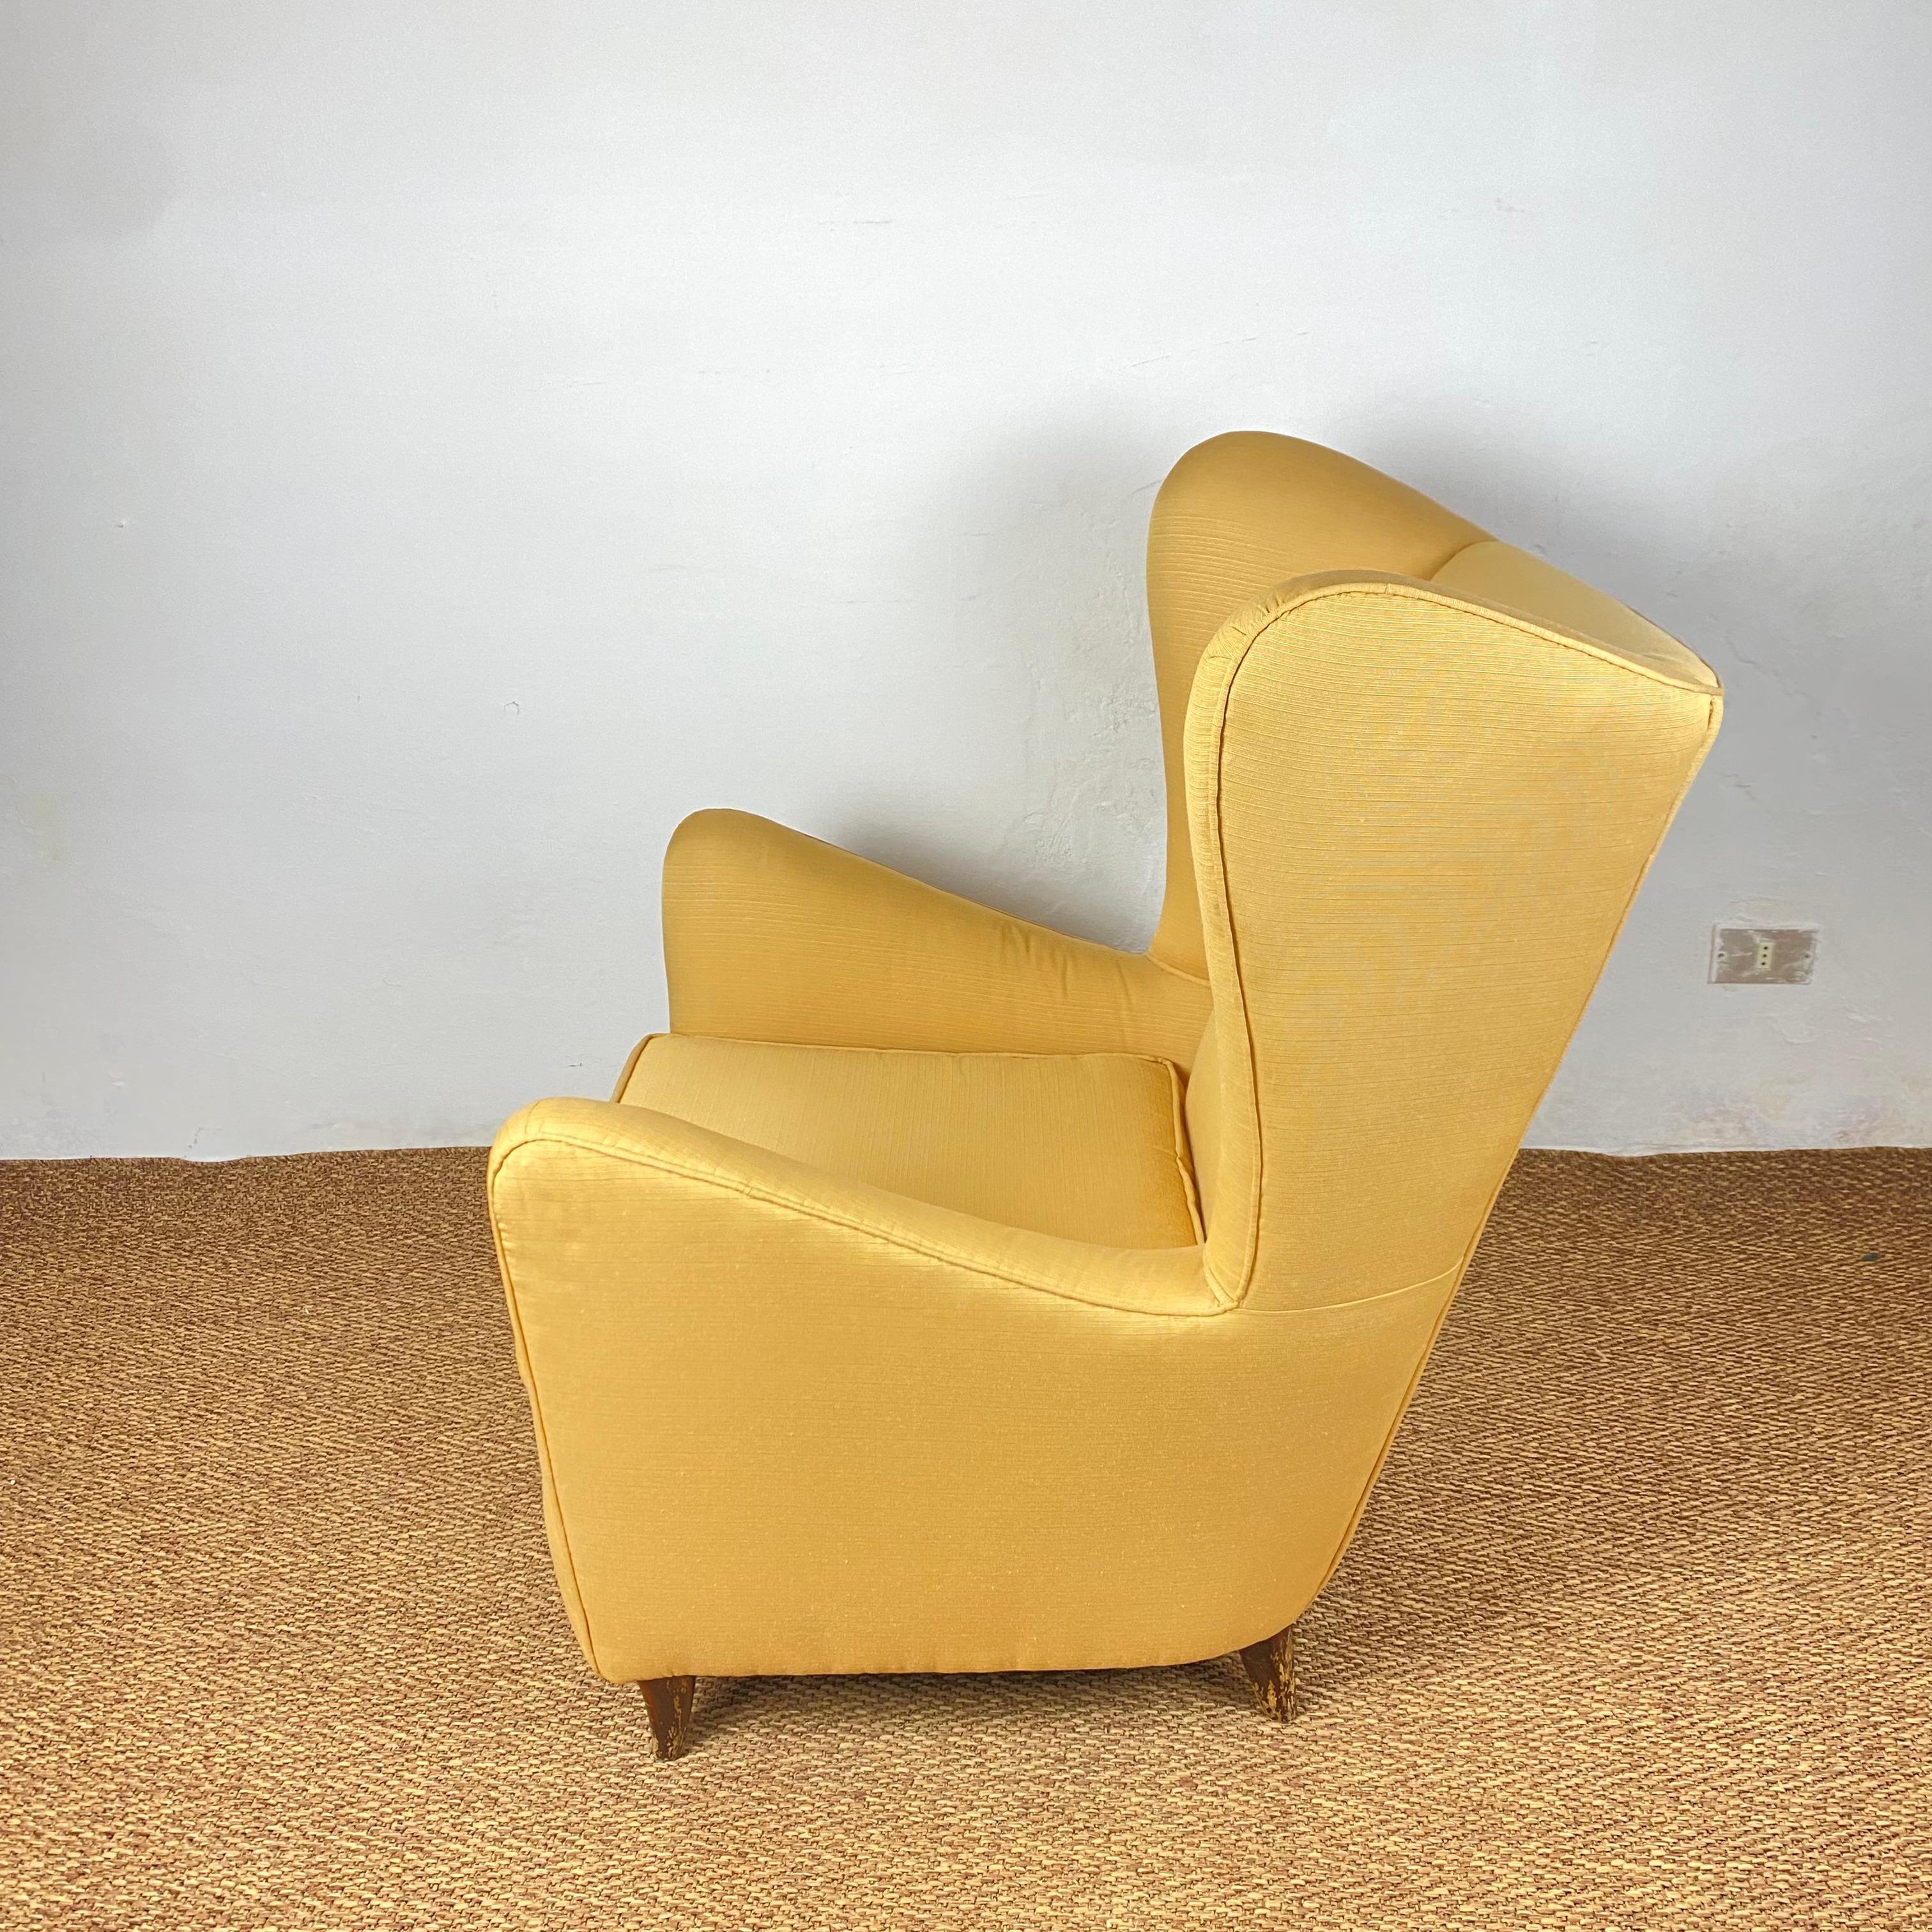 Hervorragendes Paar Sessel im Stil von Gio Ponti.
Die Sessel sind in perfektem Vintage-Zustand, fein mit gelber Seide gepolstert, die Füße weisen einige Alterungsspuren auf, sind aber strukturell in perfektem Zustand.
 
Abmessungen: H96X80X90cm.